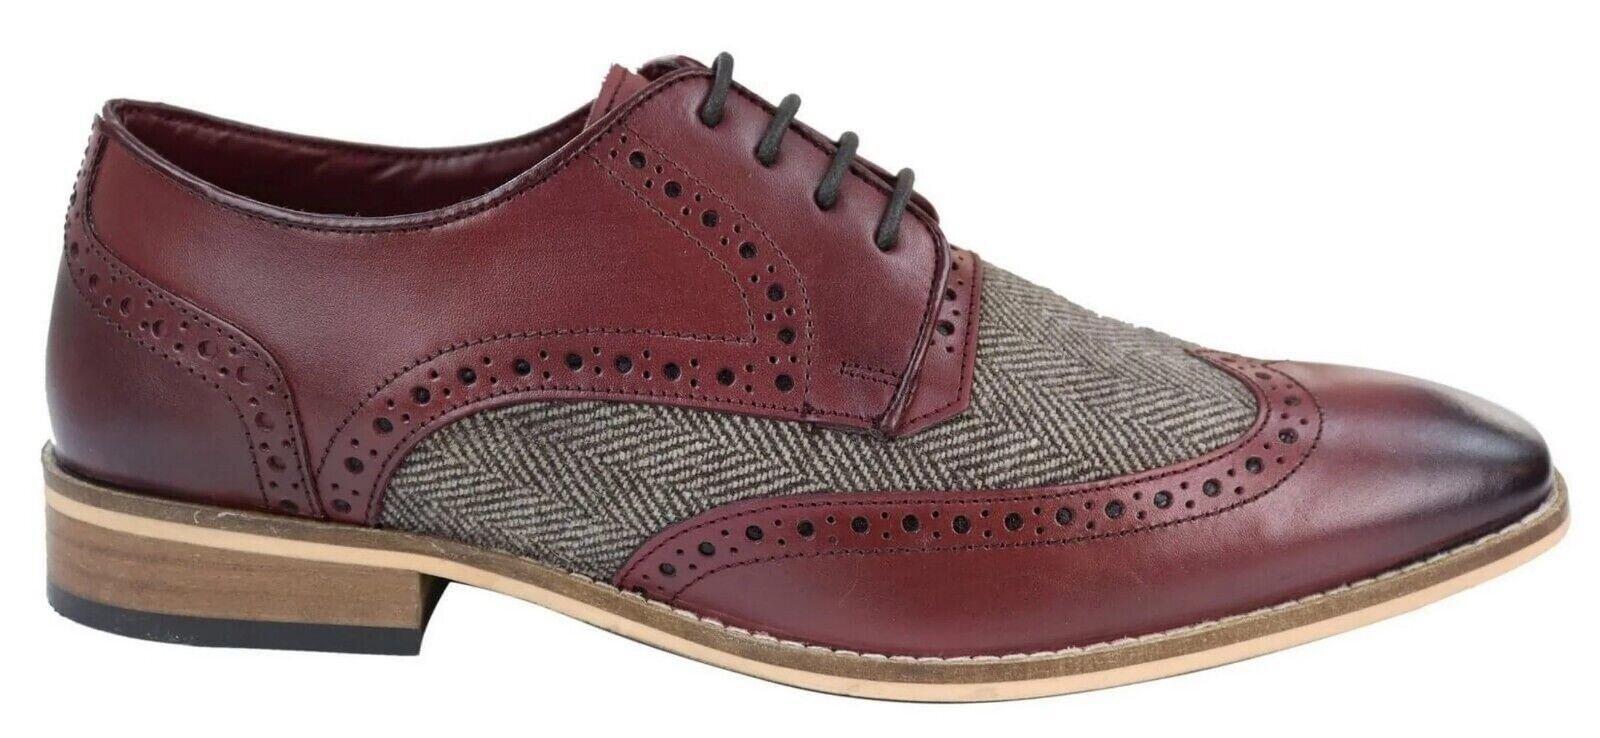 Мужские классические оксфордские твидовые туфли дерби броги из бордовой кожи House Of Cavani, красный